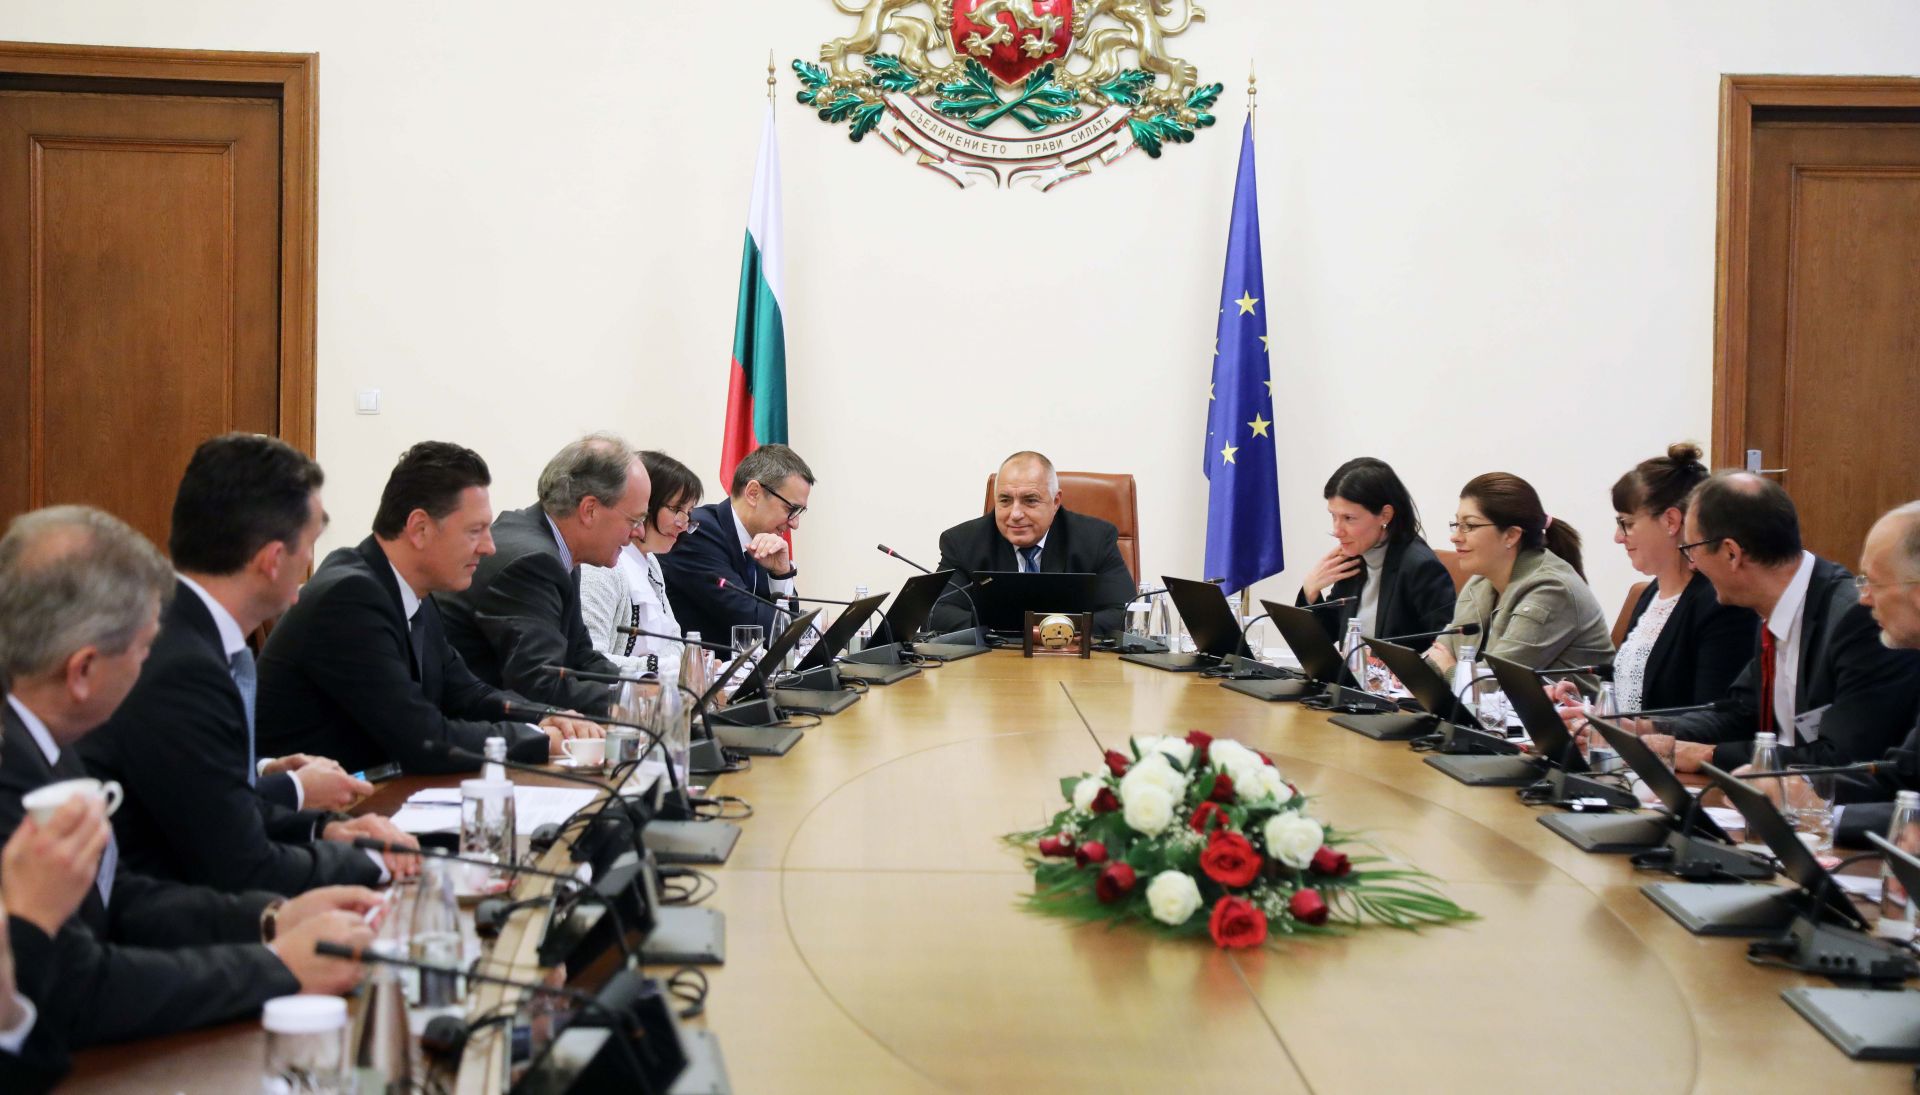 Премиерът Бойко Борисов проведе среща с представители на Германо-българската индустриално-търговска камара и Източната комисия на германската икономика